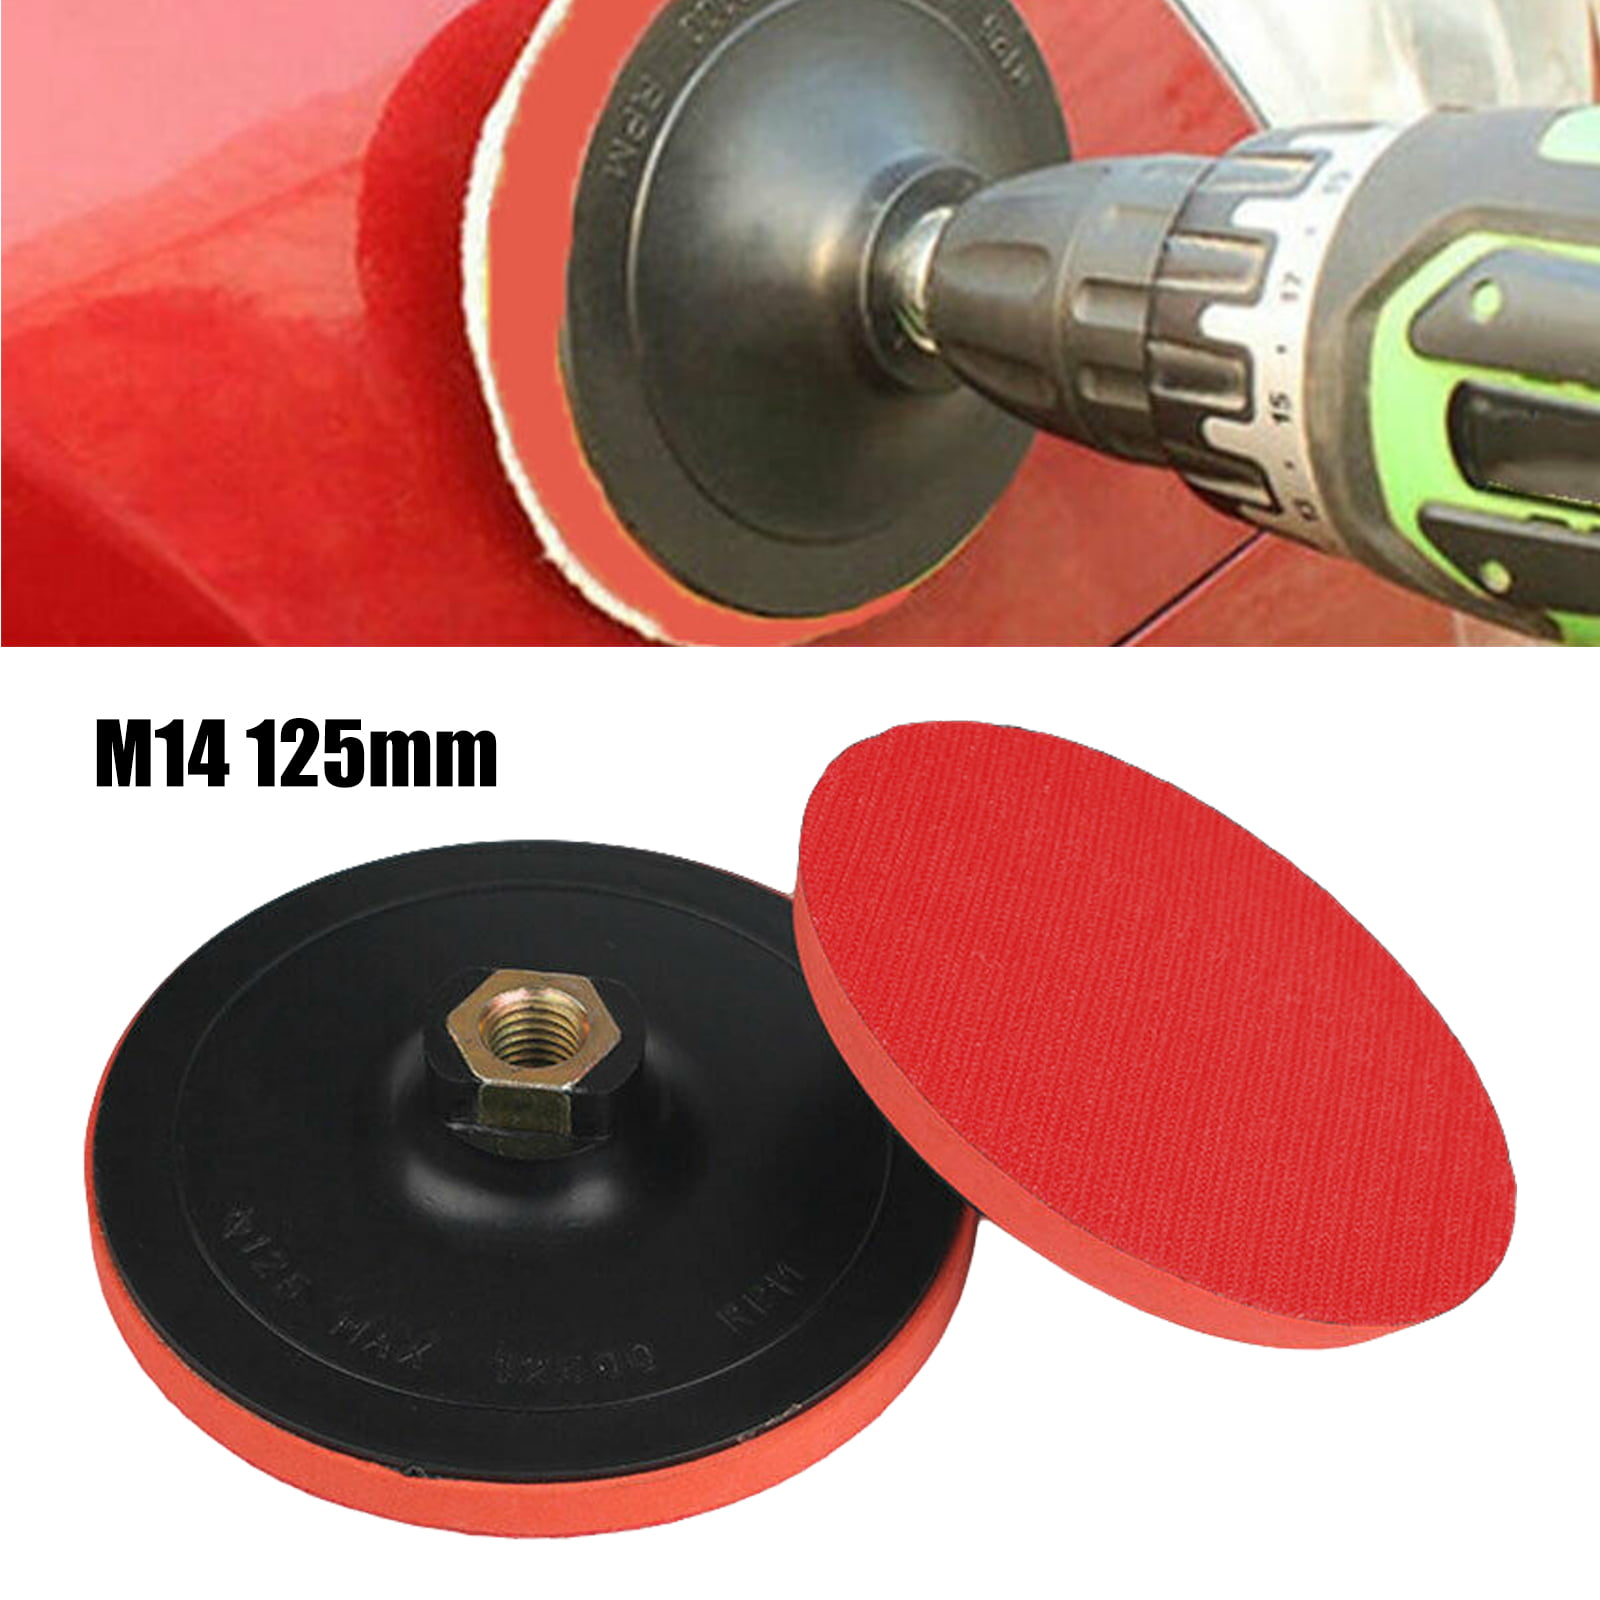 Sanding/Sander for Angle Grinder 125mm 40 Grit Aluminium Oxide Flap Disc Loops